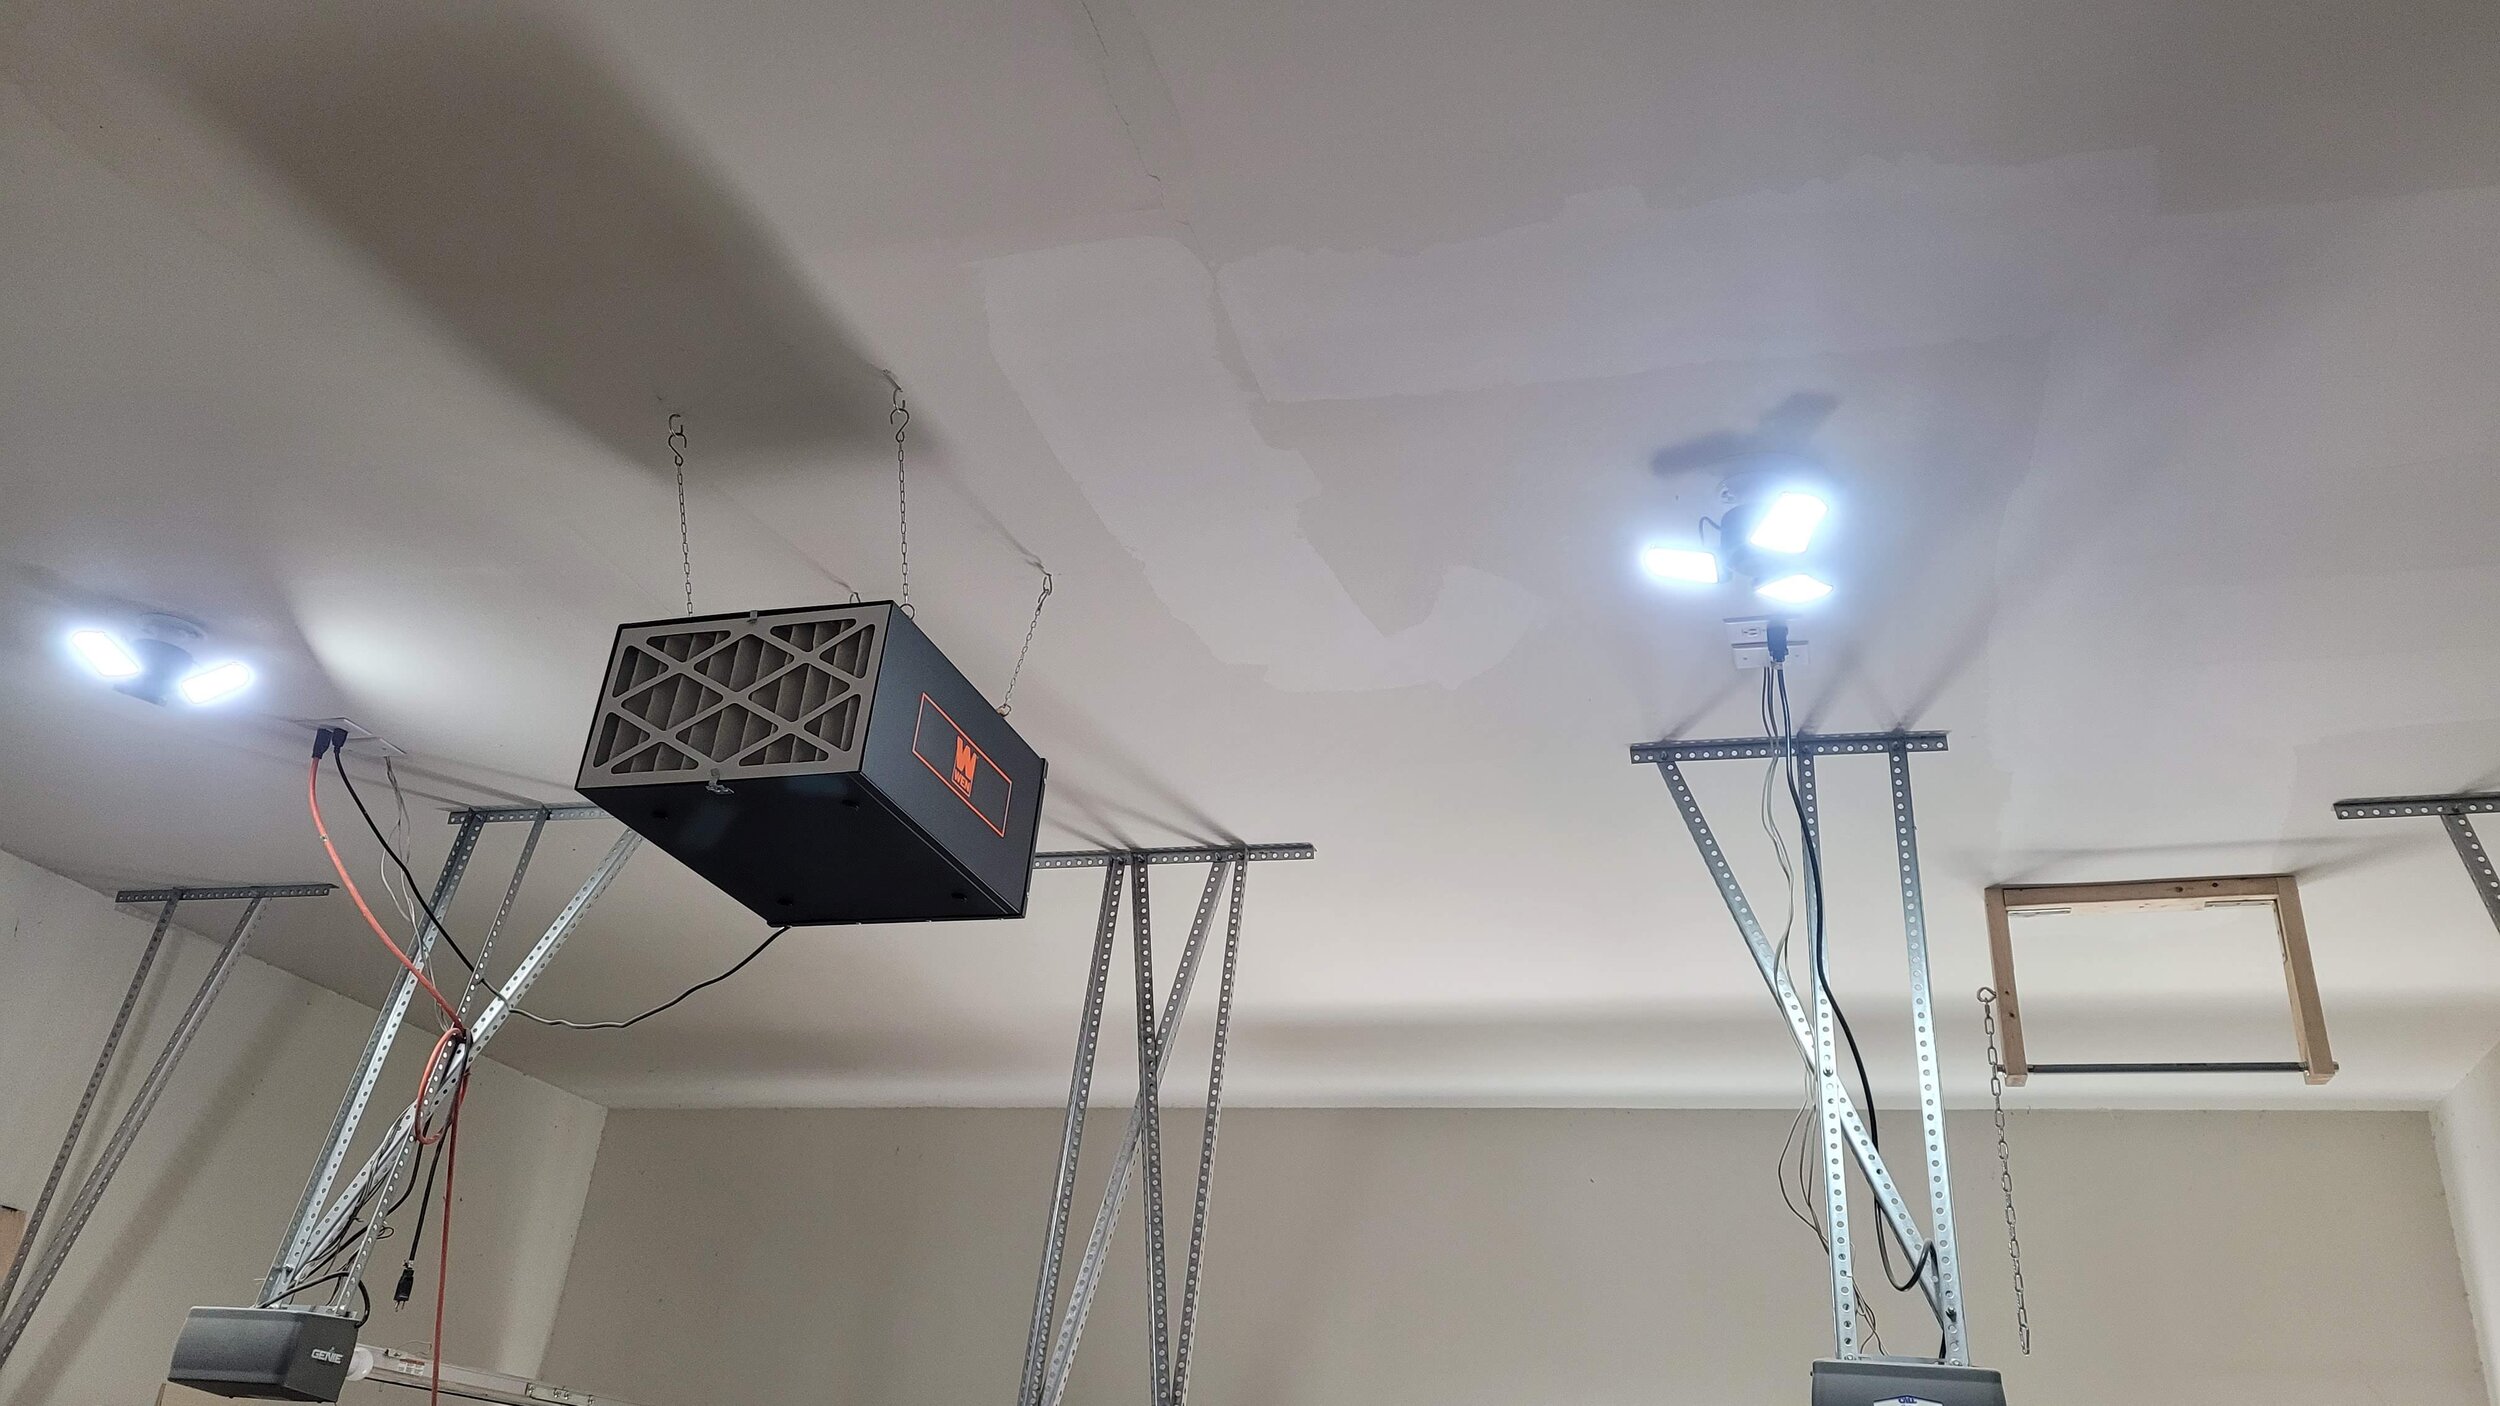 Garage Workshop Lighting Plug-in Cord Wiring Update